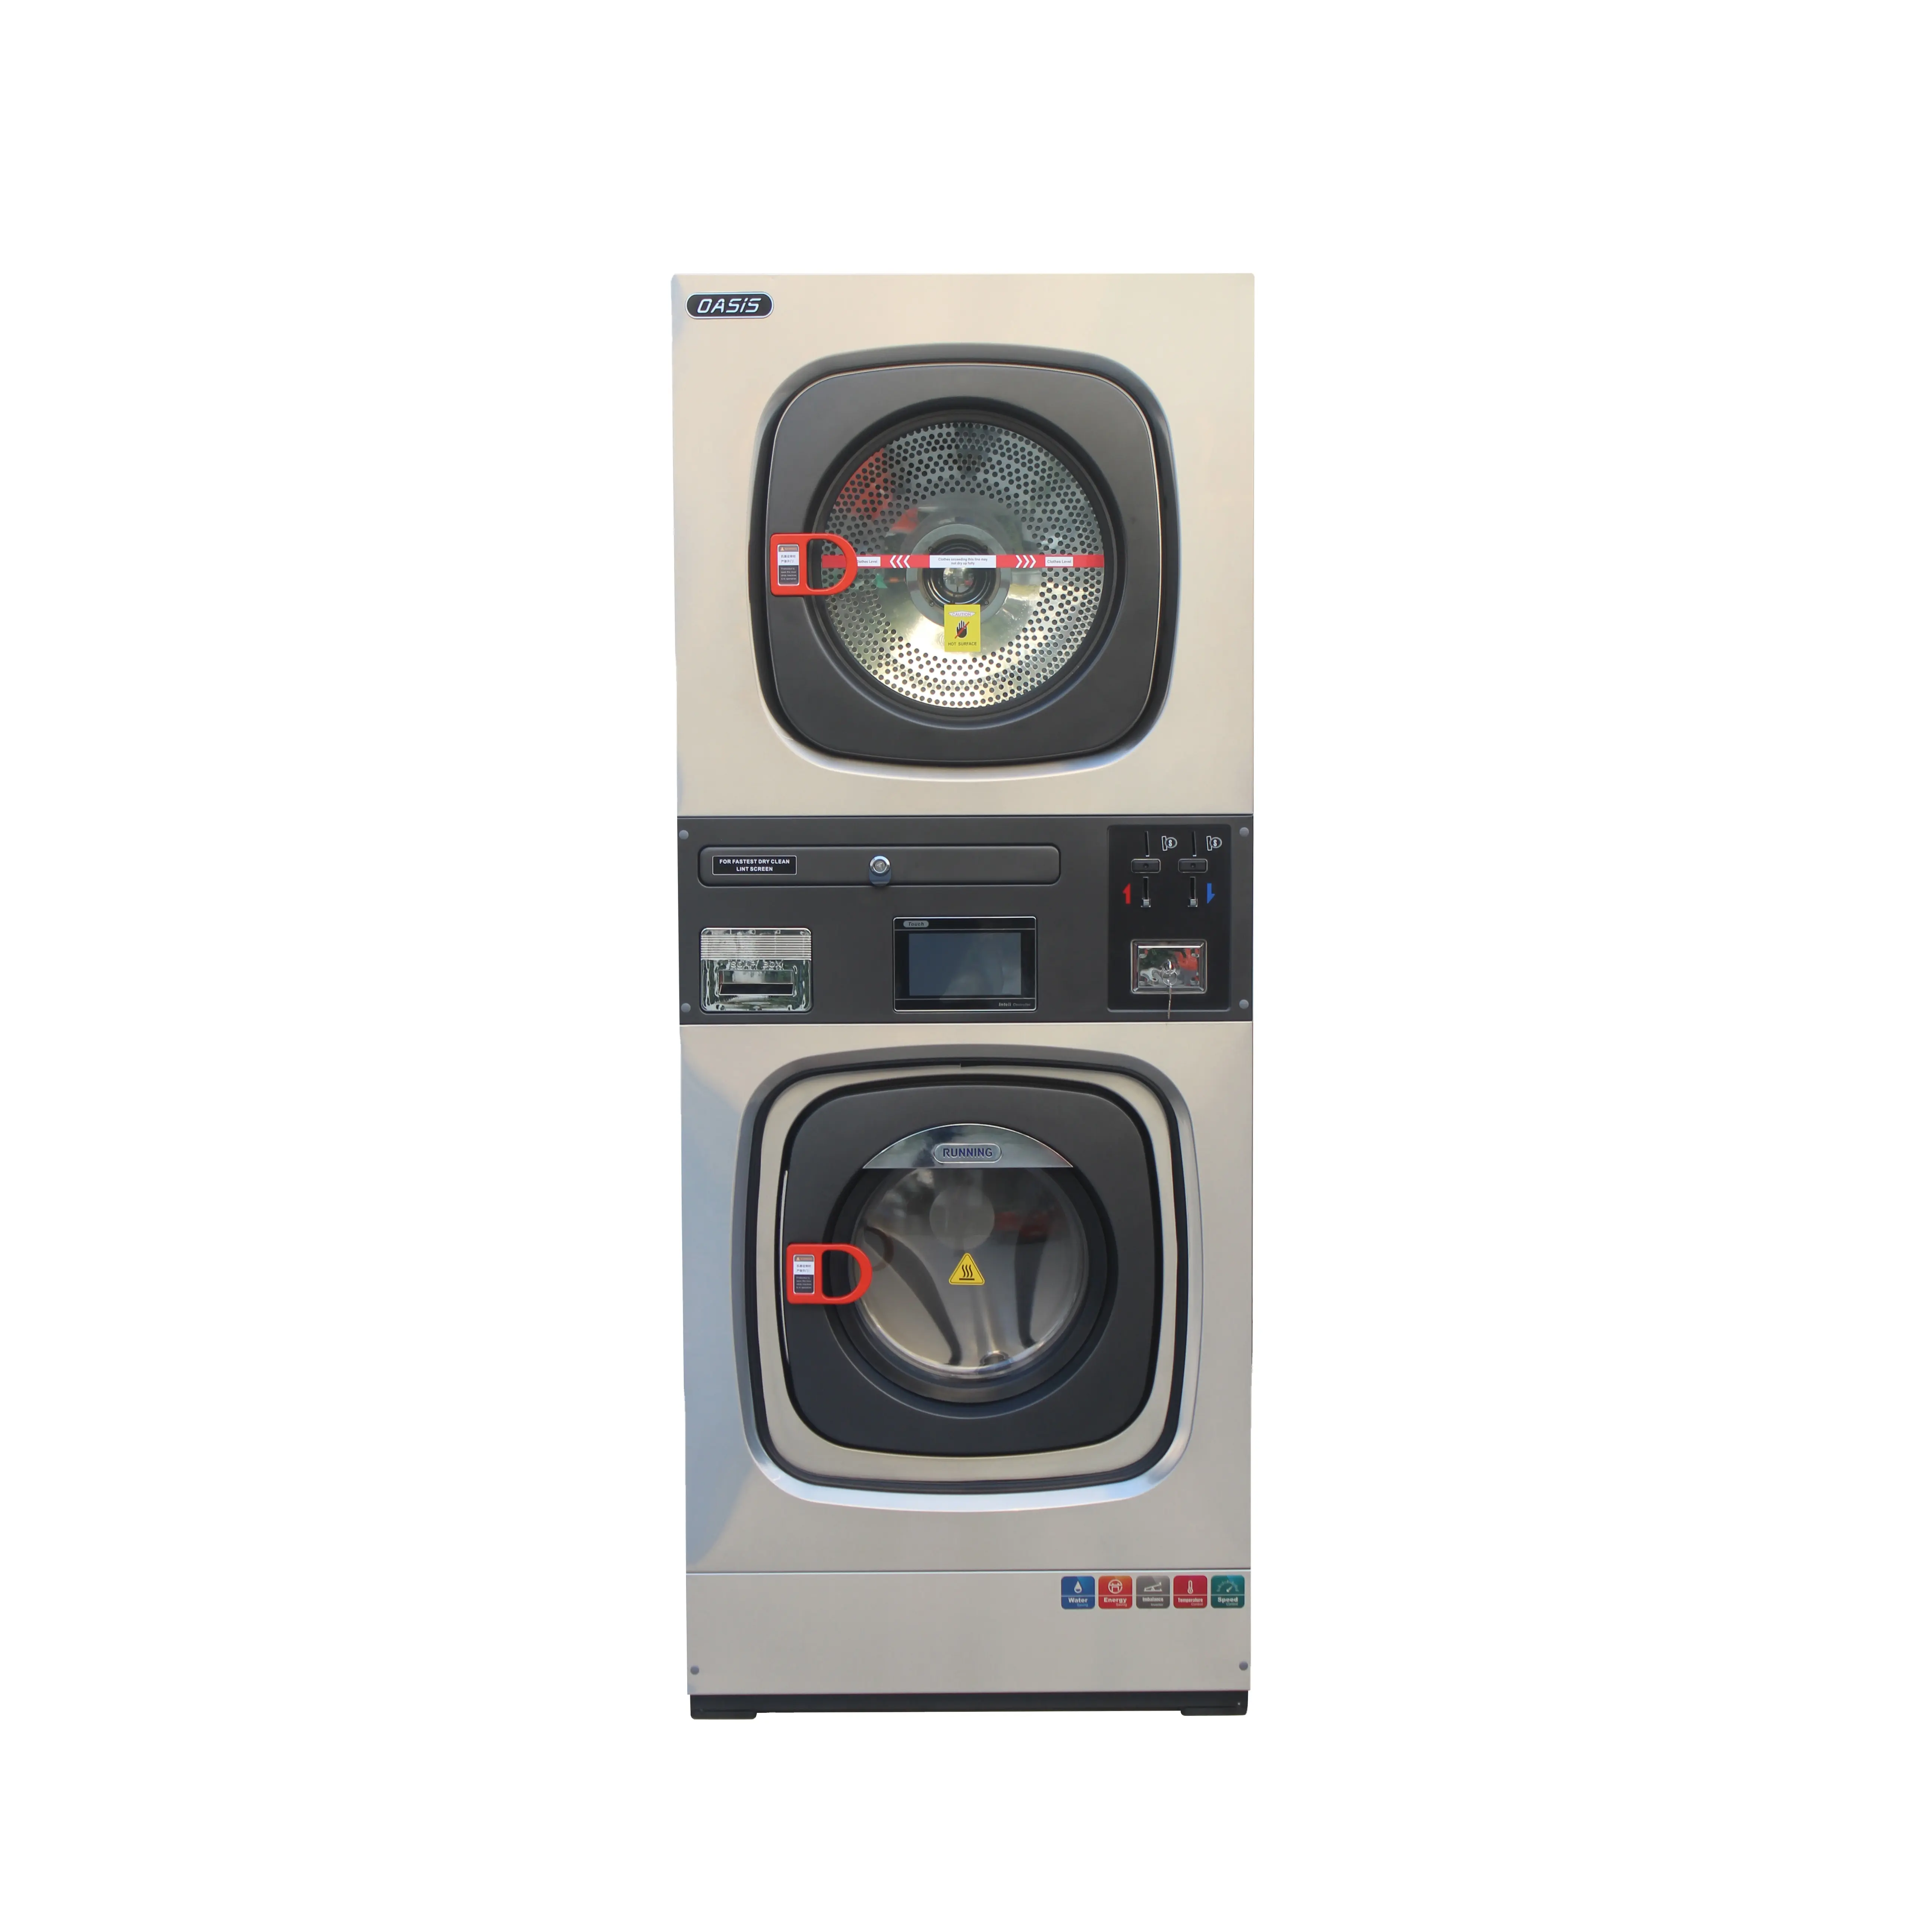 Endüstriyel ticari çamaşır yıkama kurutma makinesi setleri dokunmatik ekran kontrolü ile tamamen entegre çamaşır ve kurutma makinesi